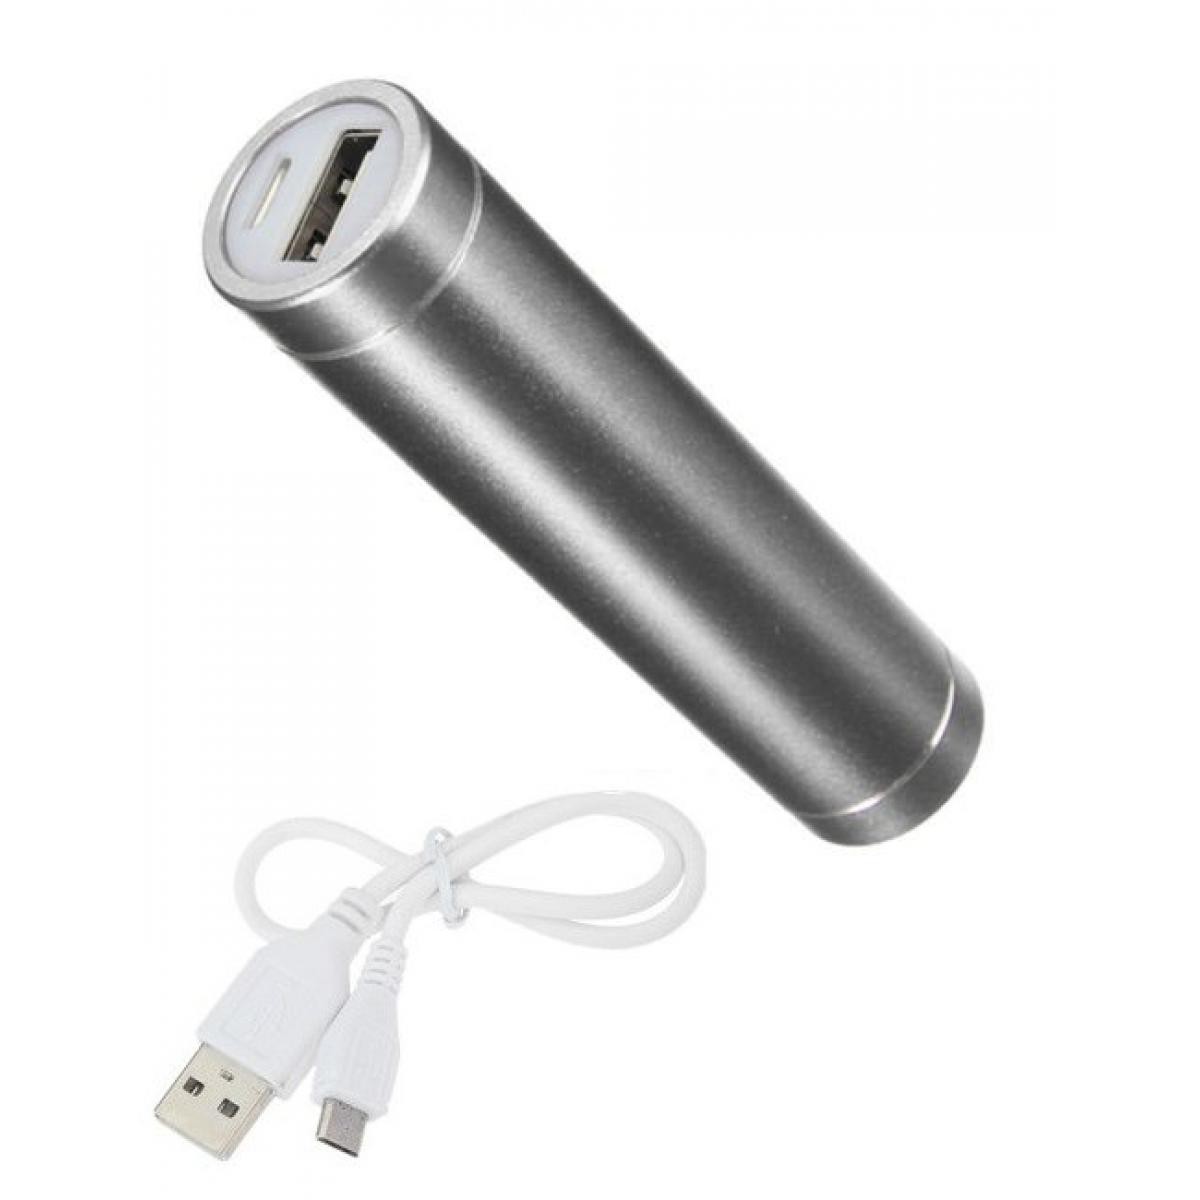 Shot - Batterie Chargeur Externe pour SAMSUNG Galaxy A10 Power Bank 2600mAh avec Cable USB/Mirco USB Secours Telephone (ARGENT) - Chargeur secteur téléphone